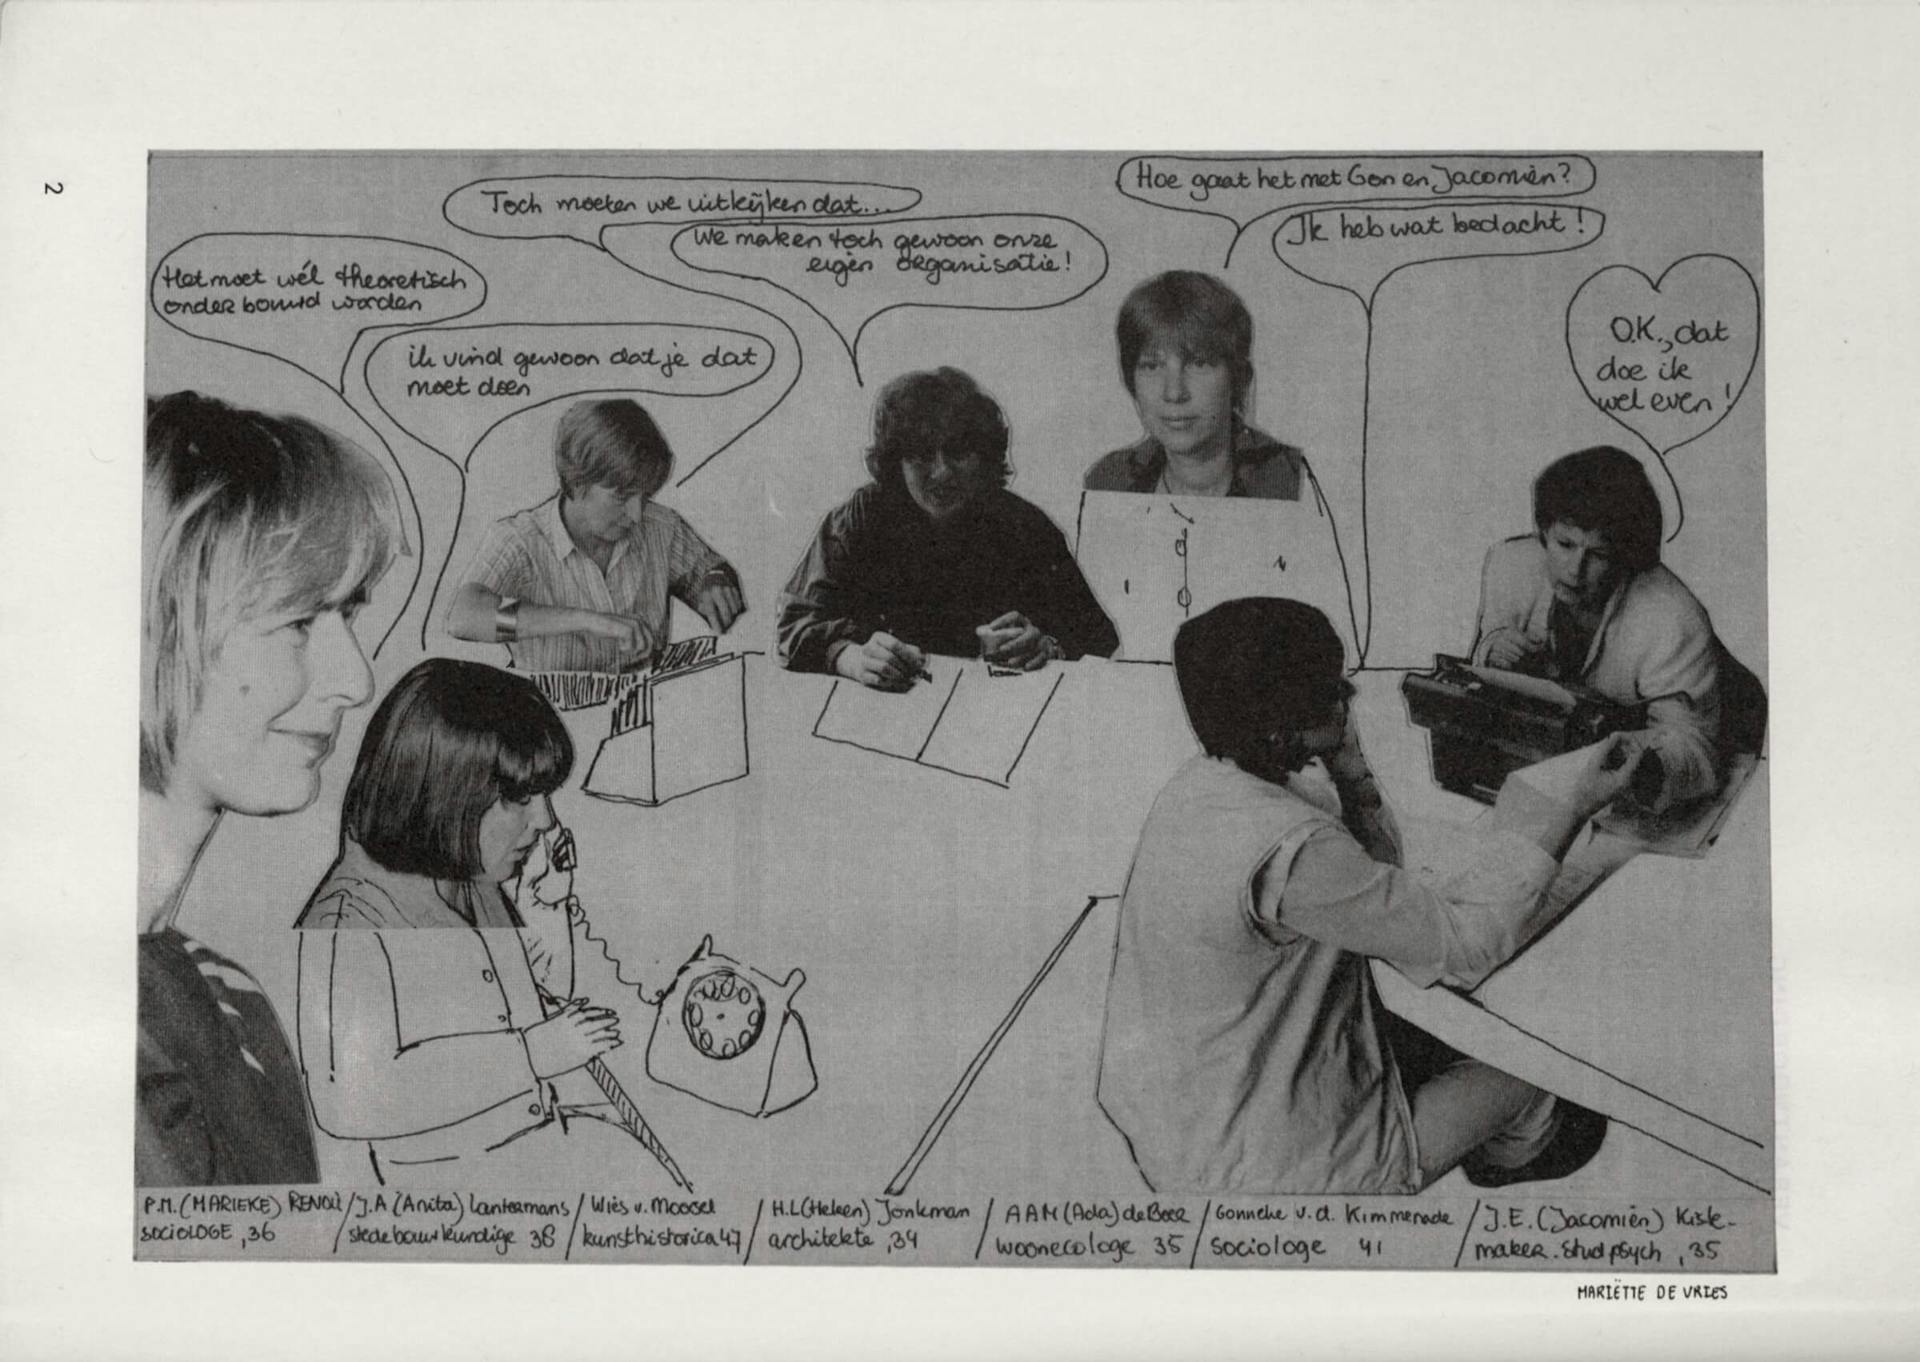 Collage of Vrouwen Bouwen en Wonen group, published in “Leesbundel Vrouwen Bouwen en Wonen”, design: Mariëtte de Vries, 1983. Source: Collection Het Nieuwe Instituut  